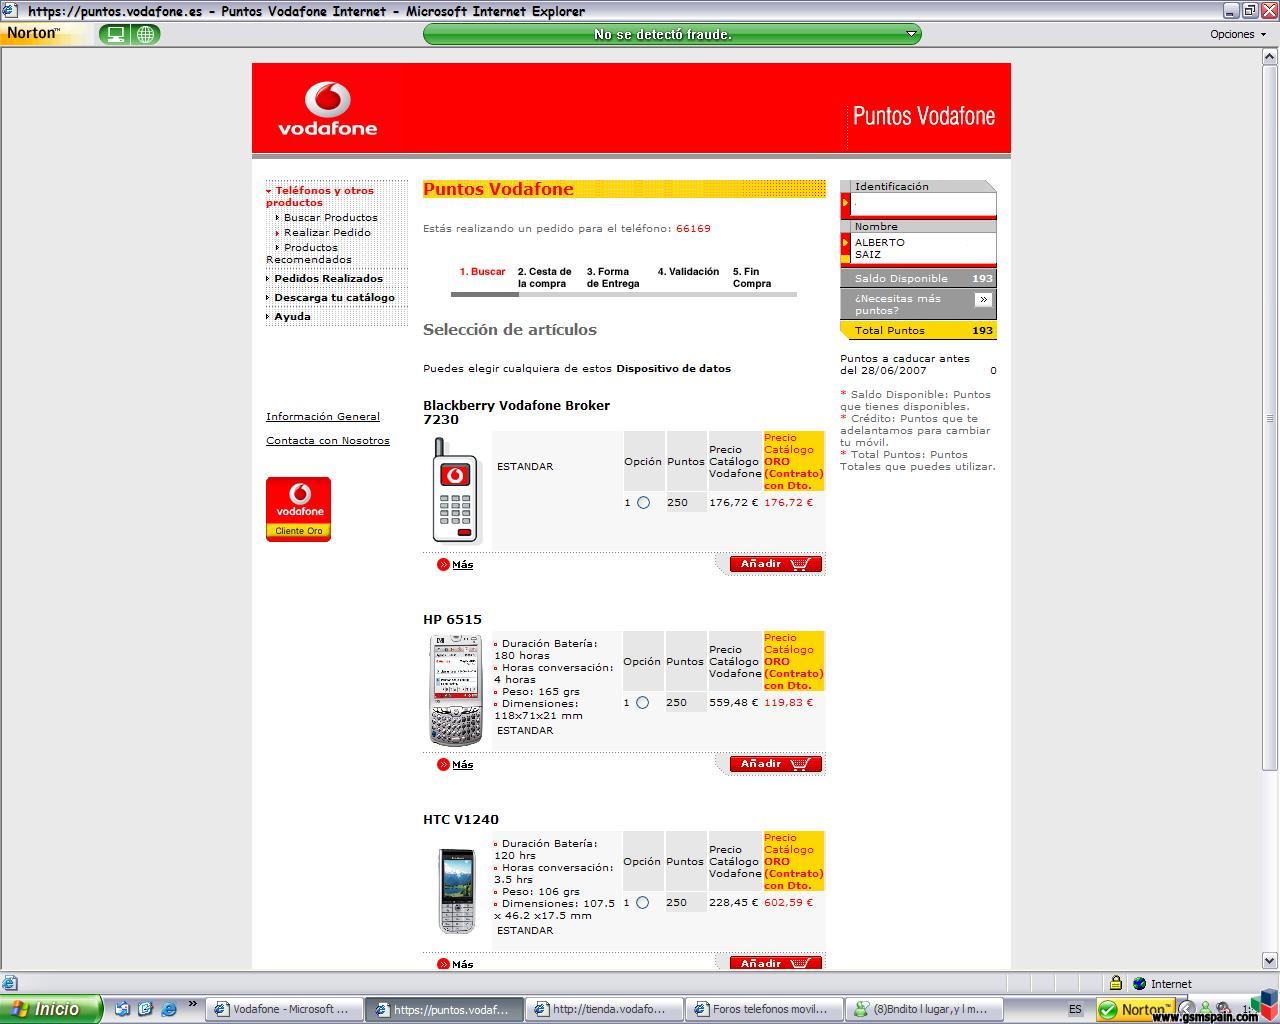 clientes Oro De Vodafone!!!!!